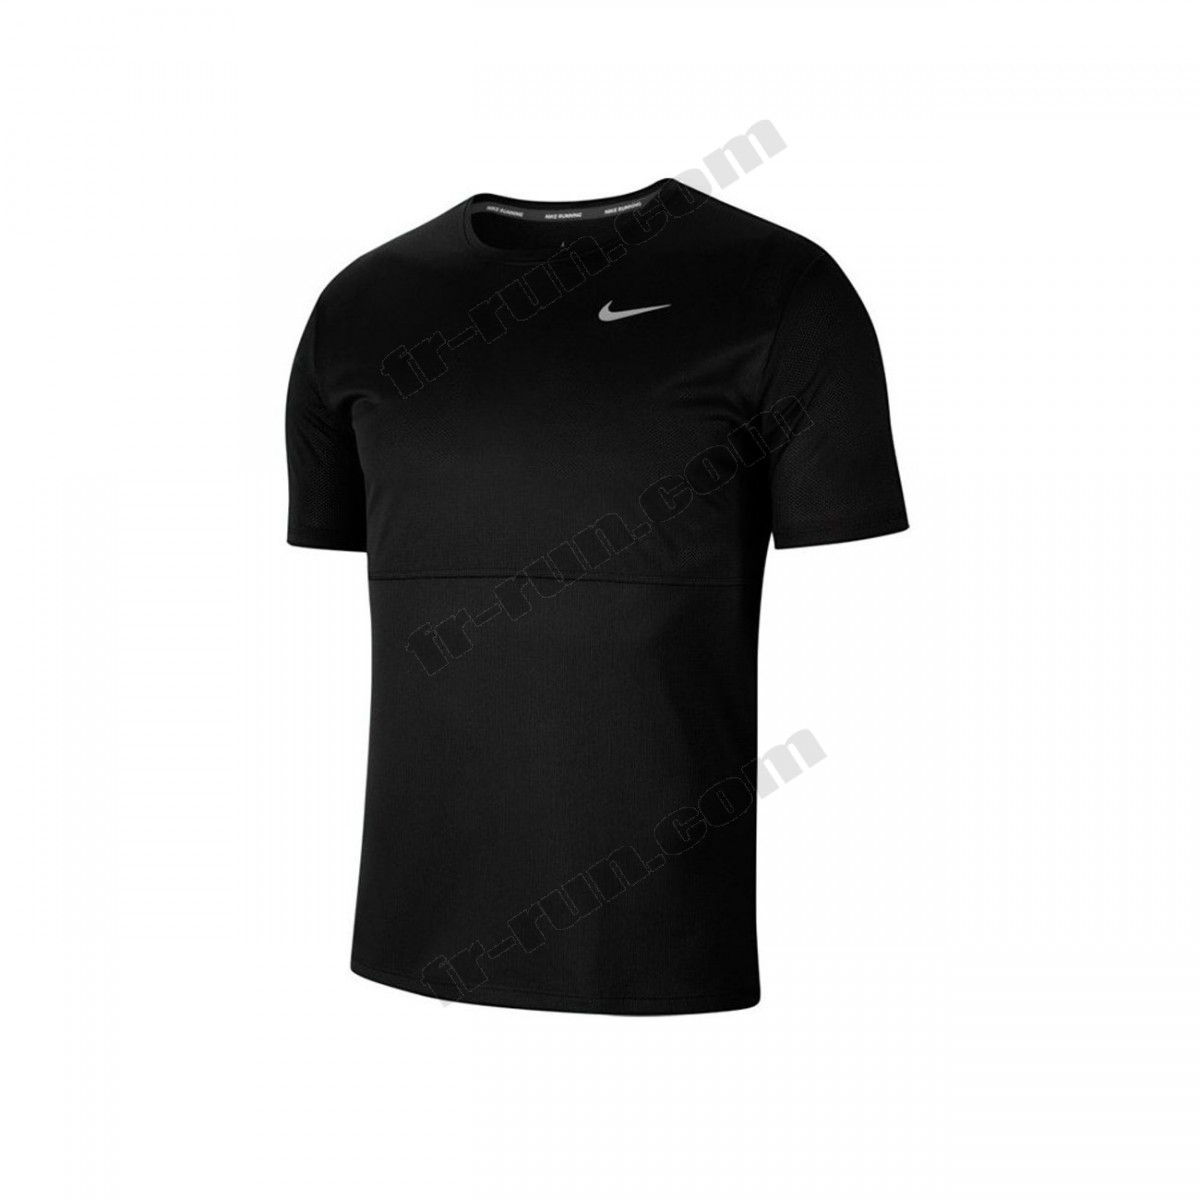 Nike/running homme NIKE Nike Breathe Run √ Nouveau style √ Soldes - Nike/running homme NIKE Nike Breathe Run √ Nouveau style √ Soldes